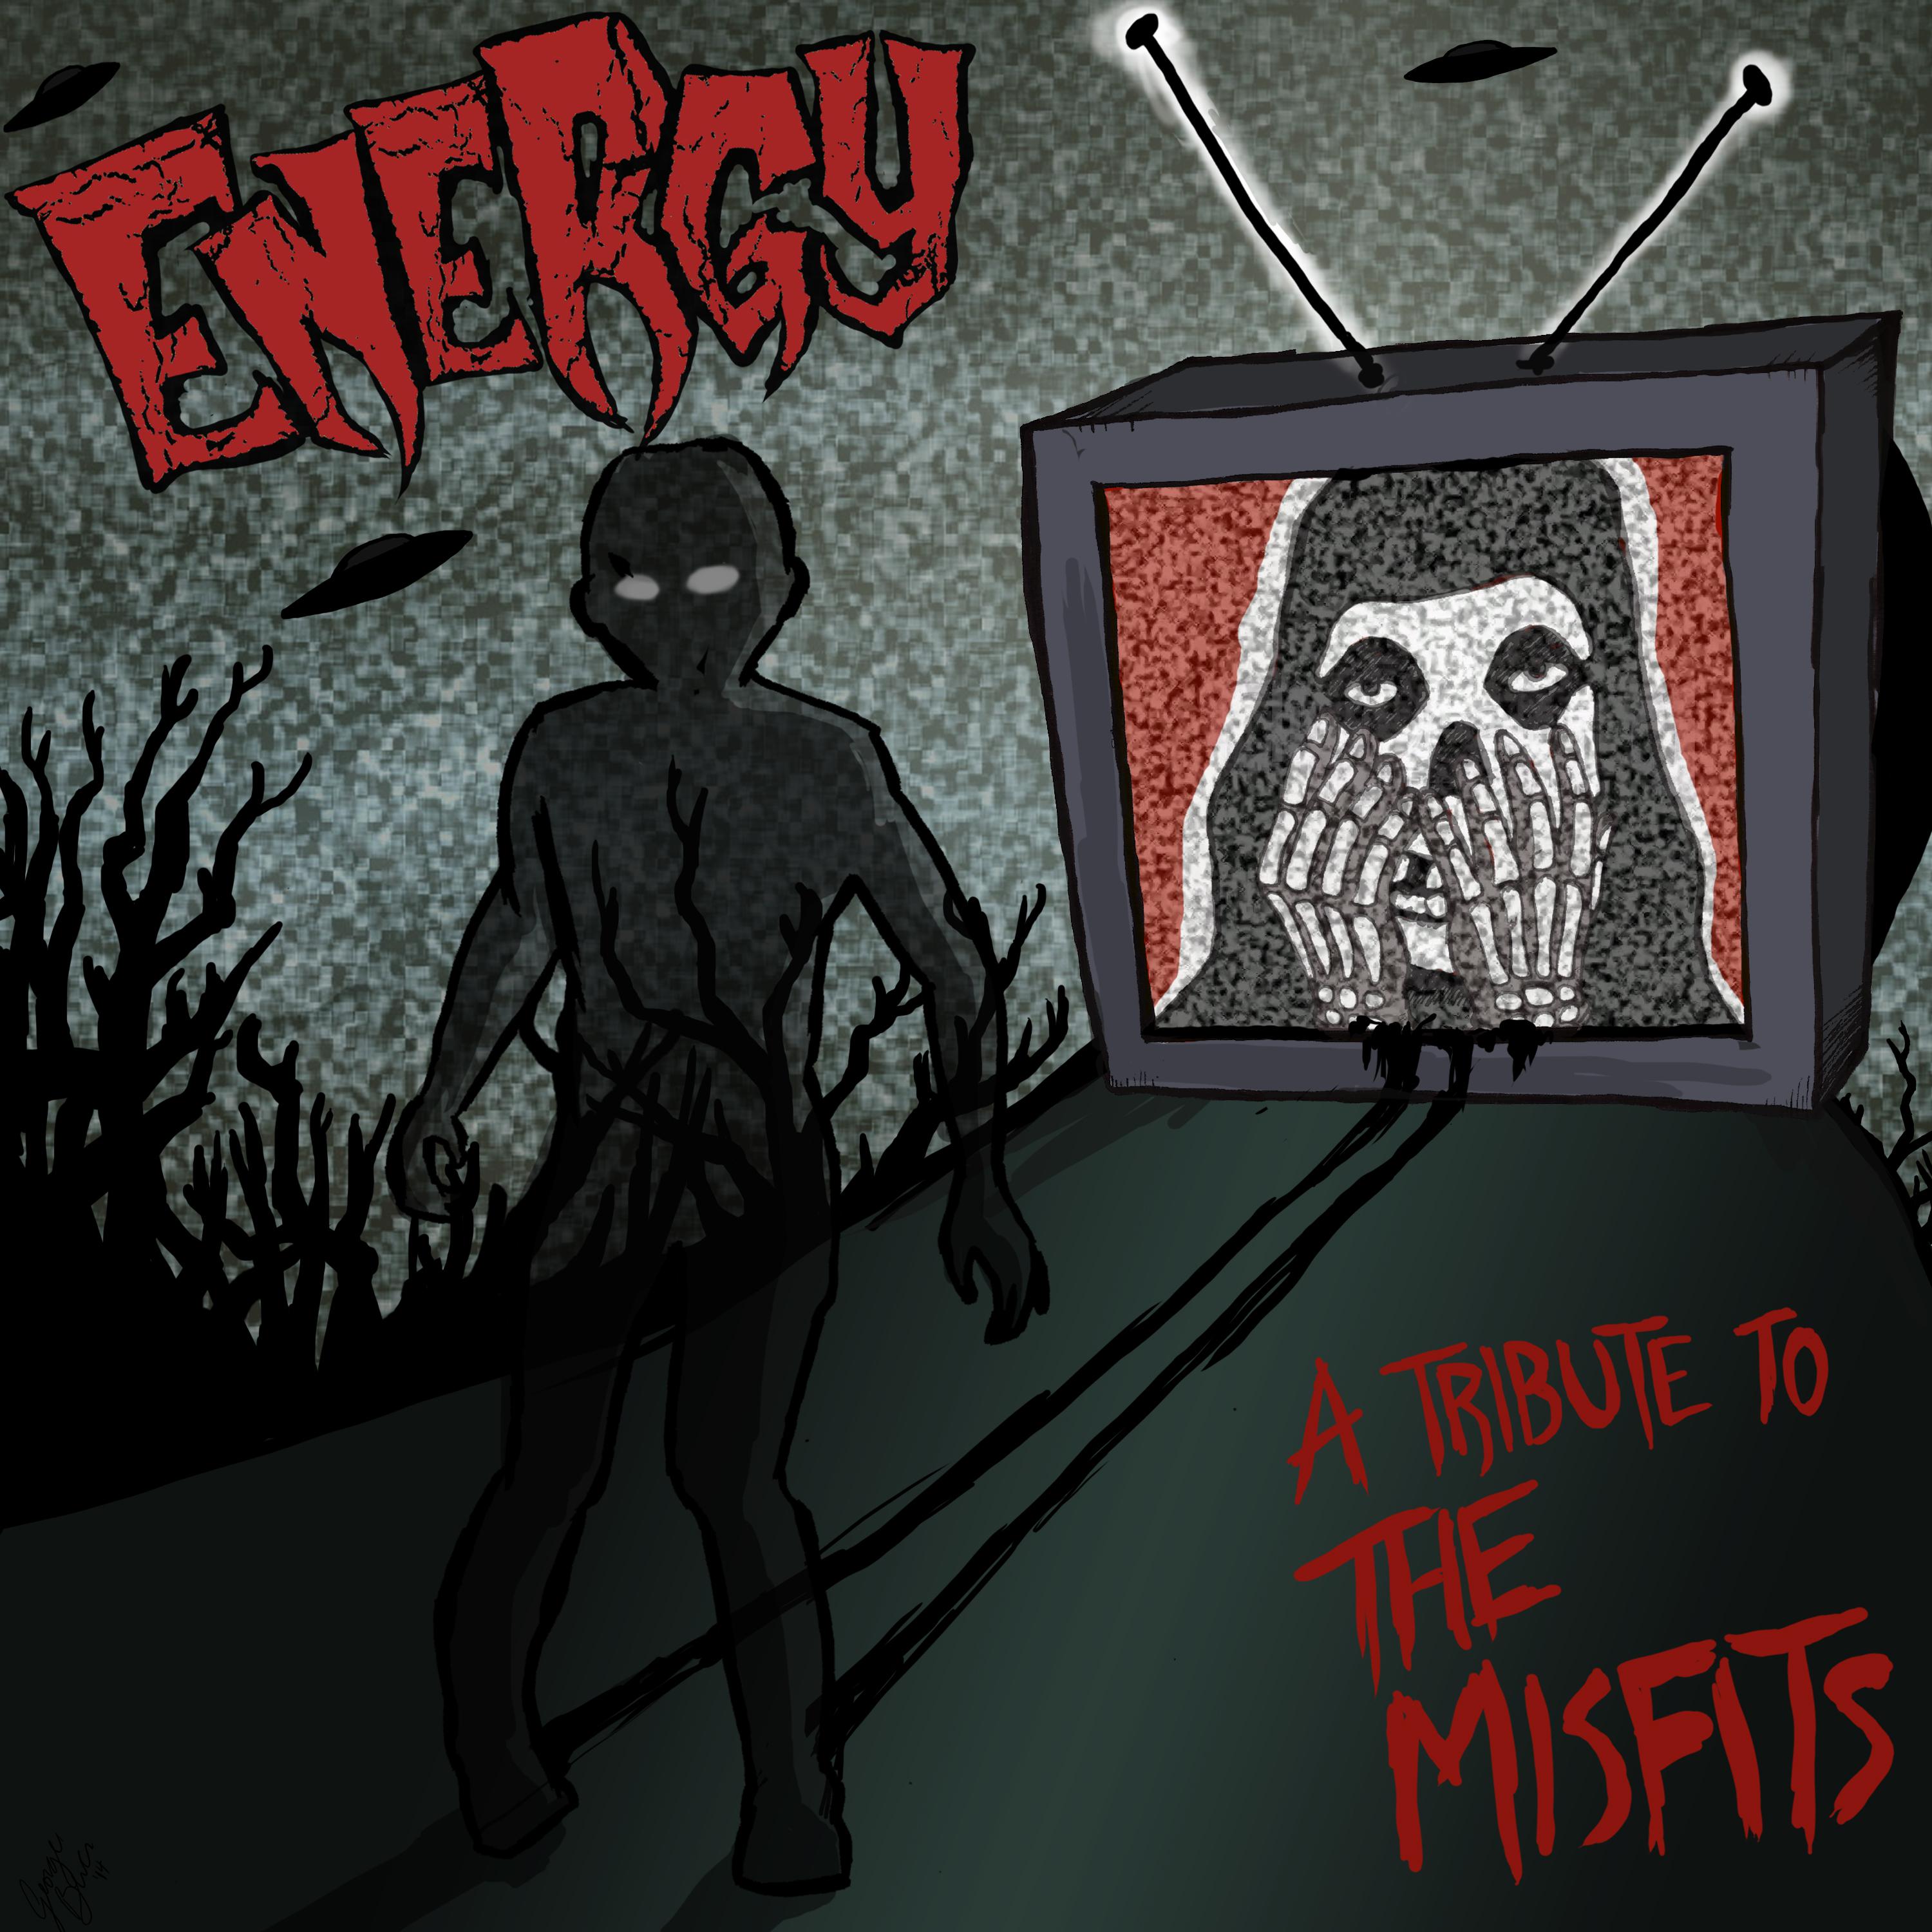 Energy - Astro Zombies